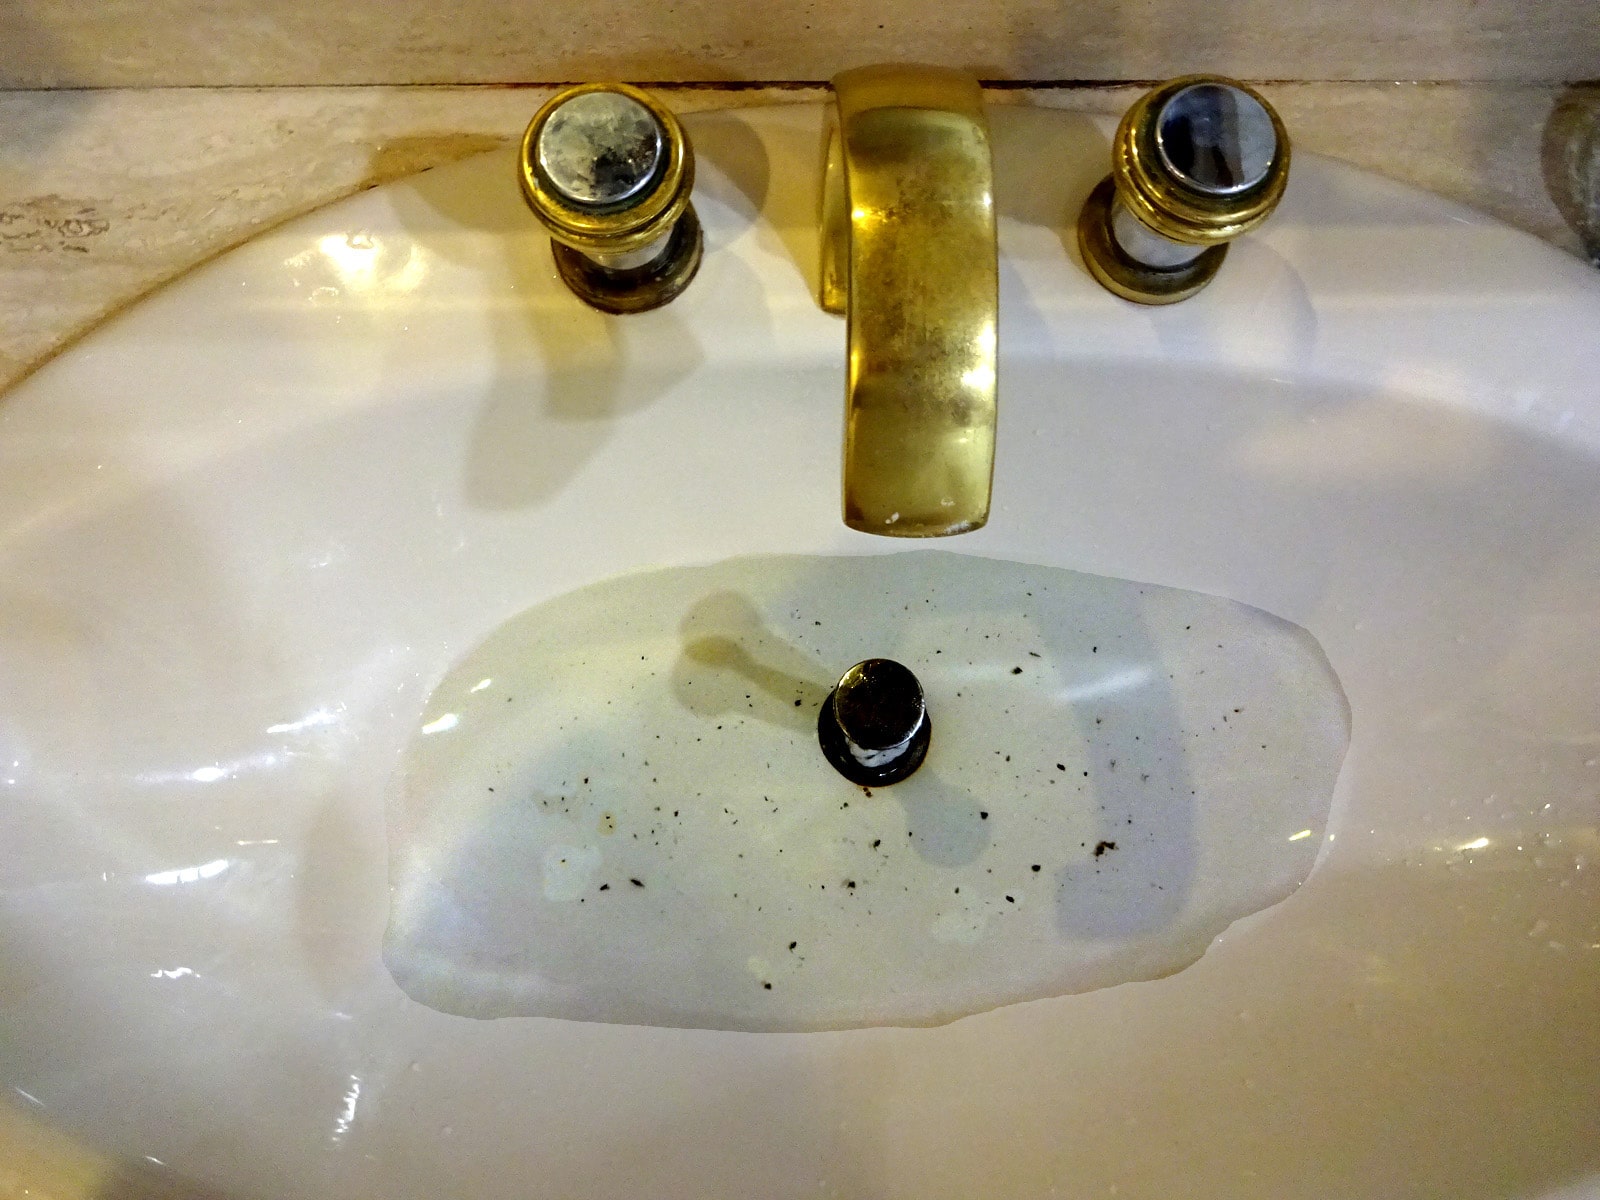 A clogged bathroom sink.